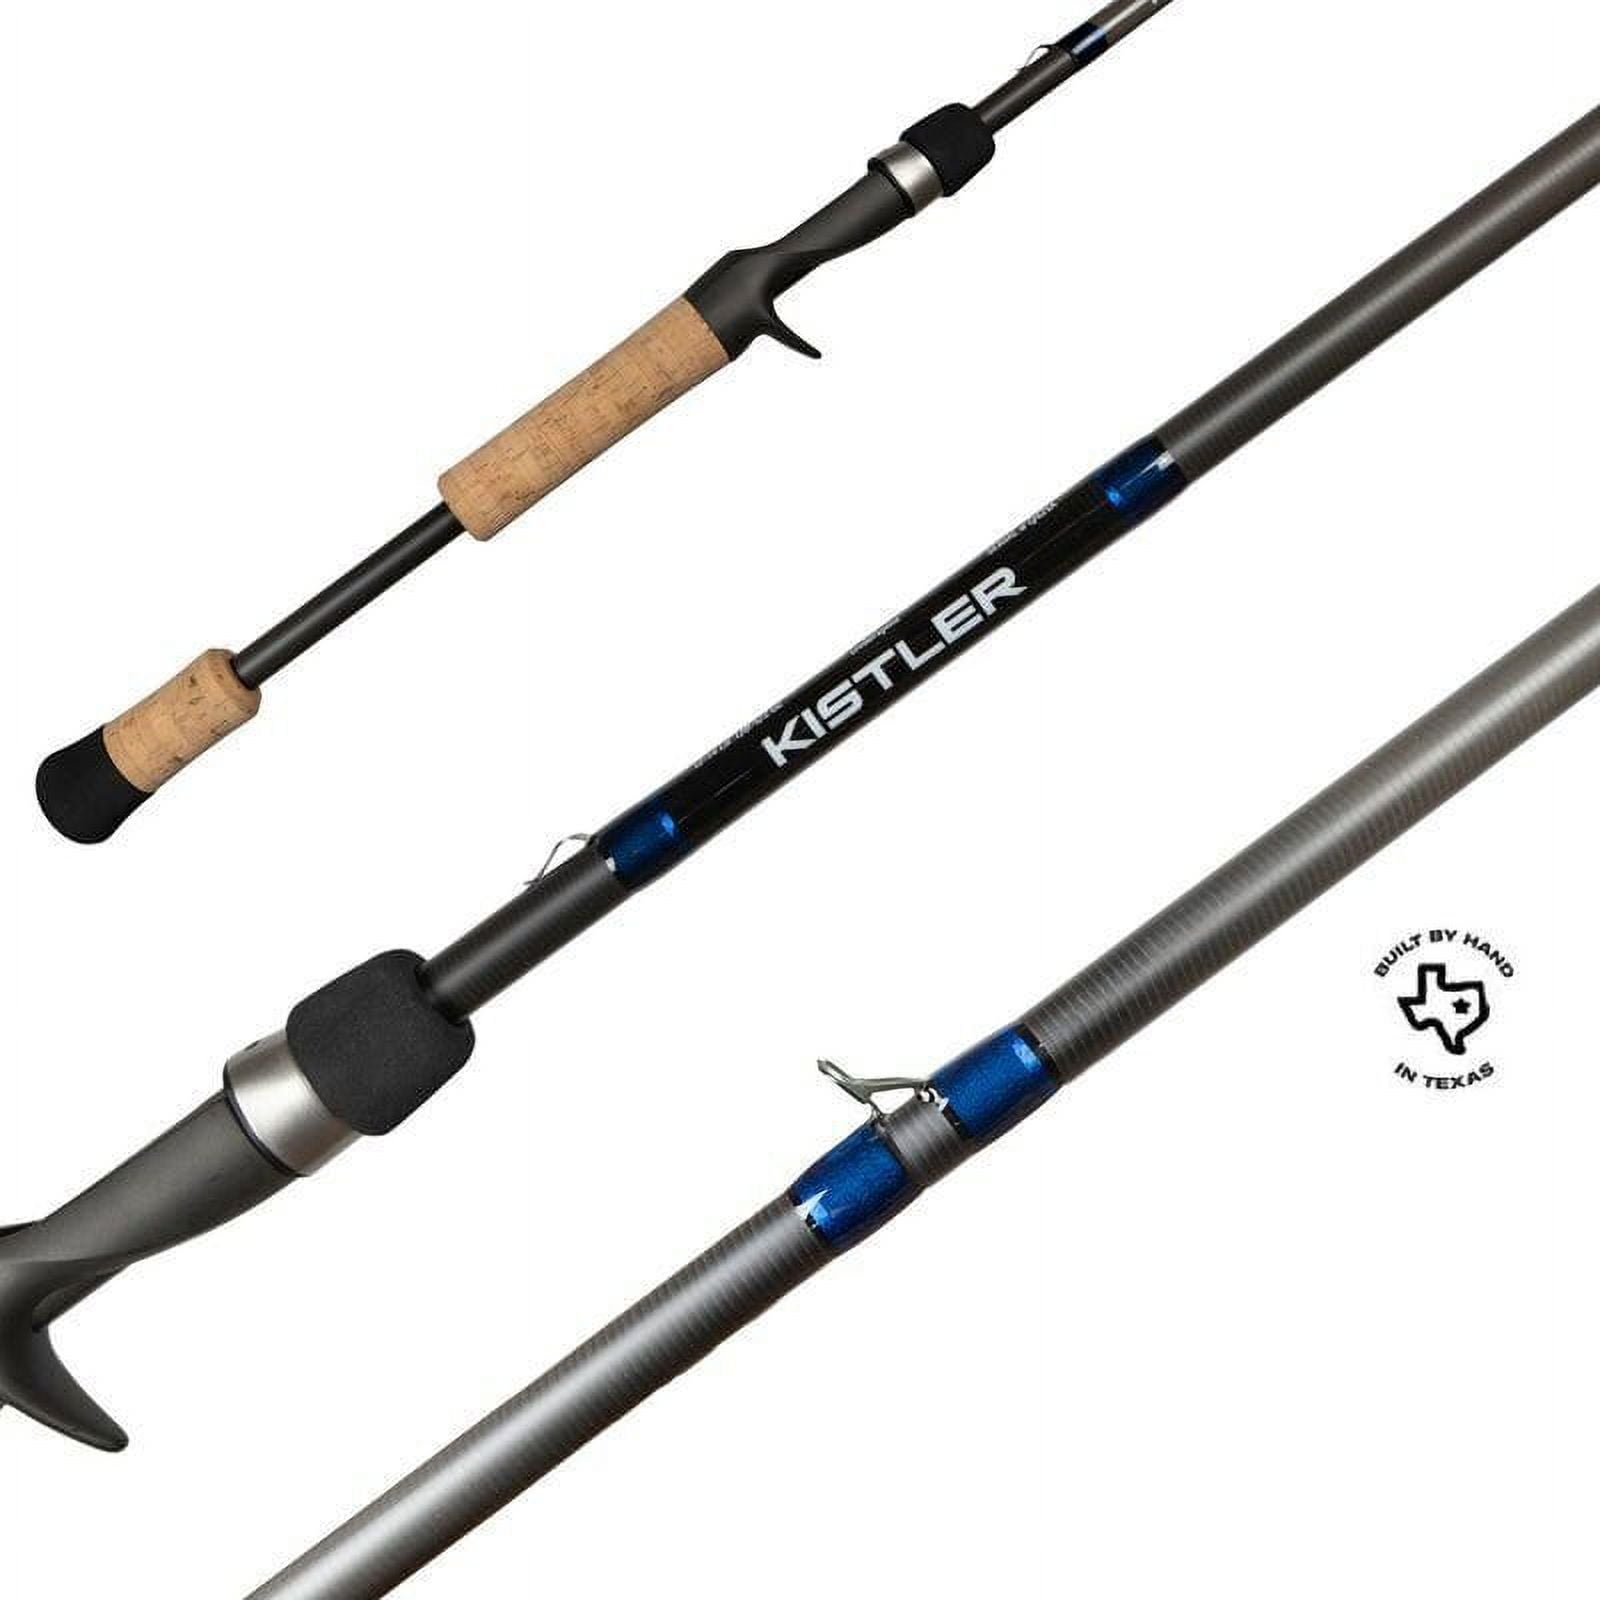 salmon steelhead rod 